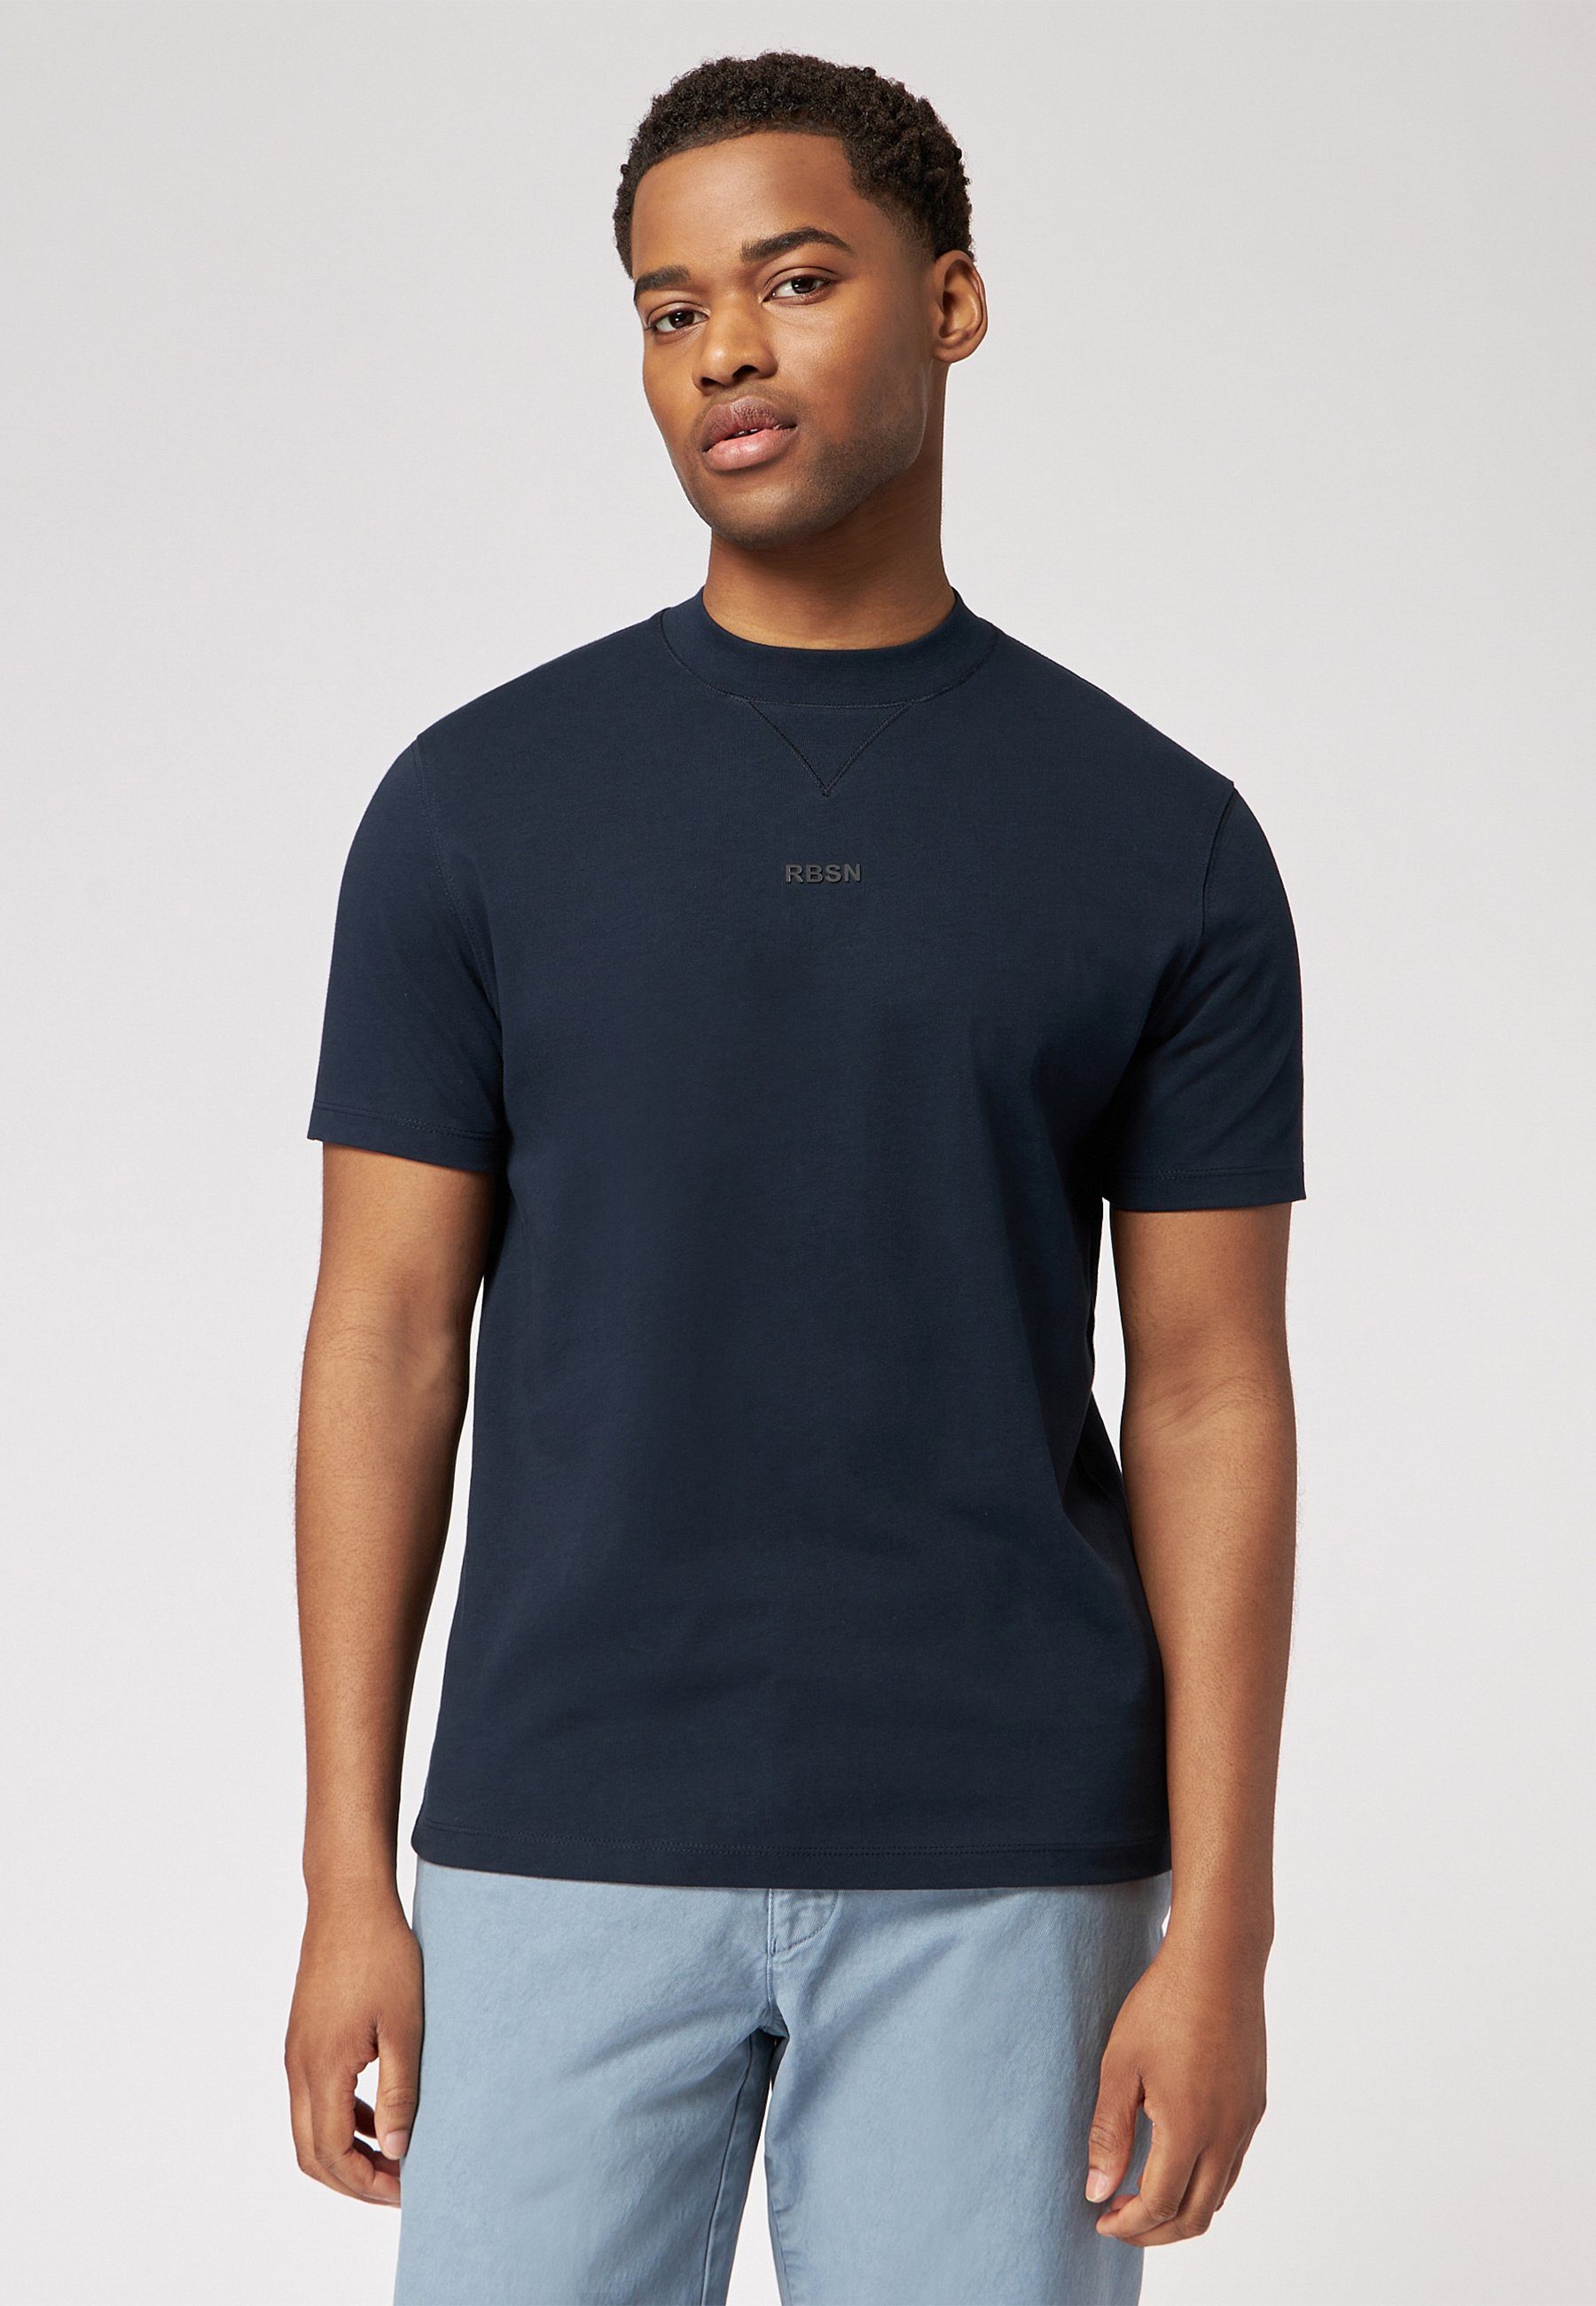 Roy Robson T-Shirt T-Shirt mit Rundhals dunkelblau